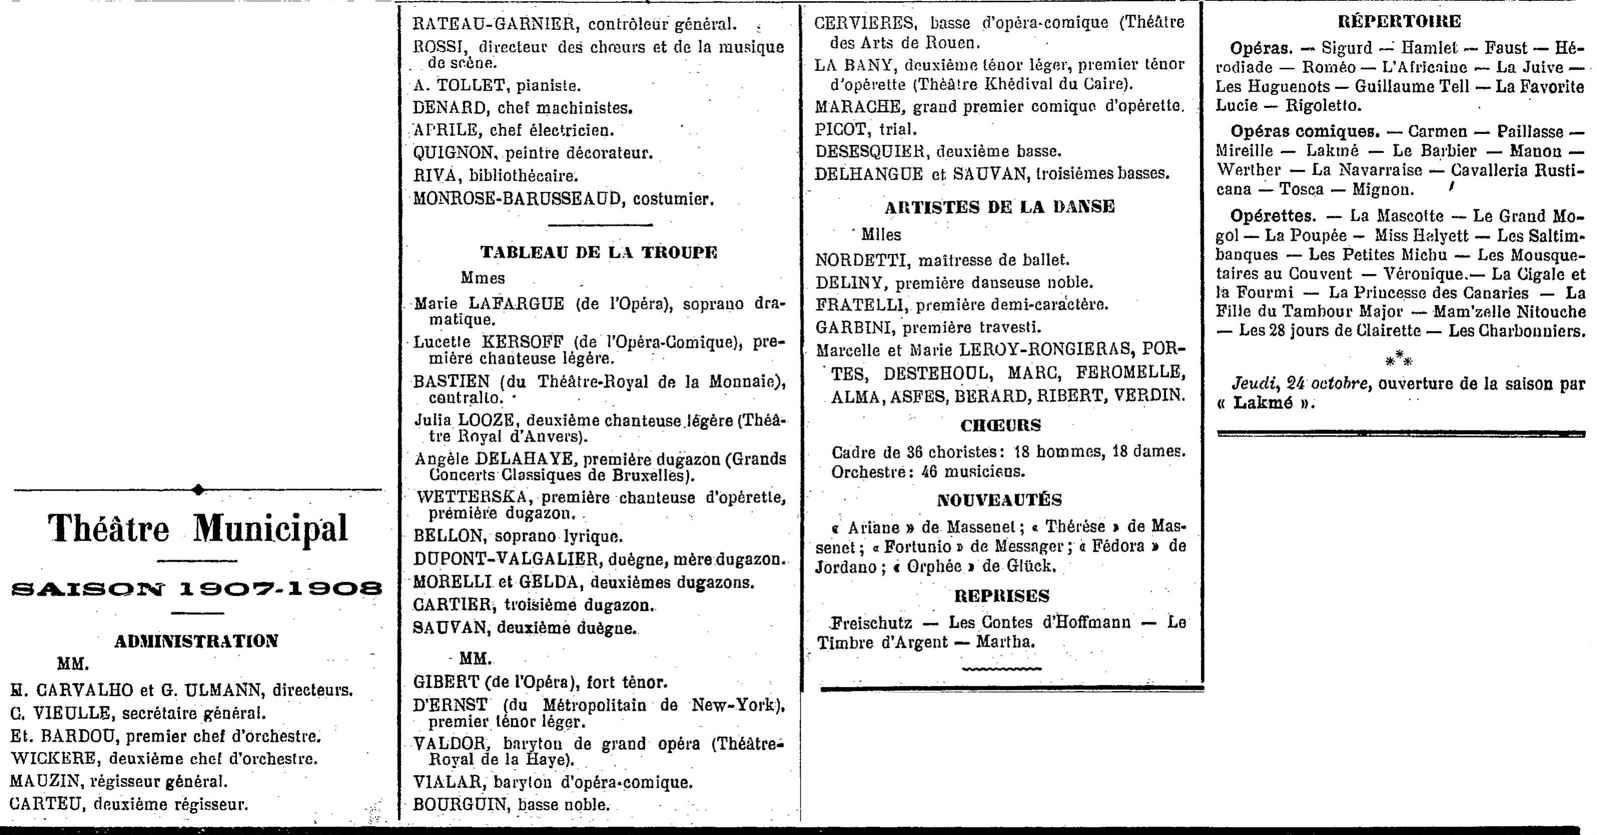 Programme de l'opéra d'Alger - saison 1907-1908